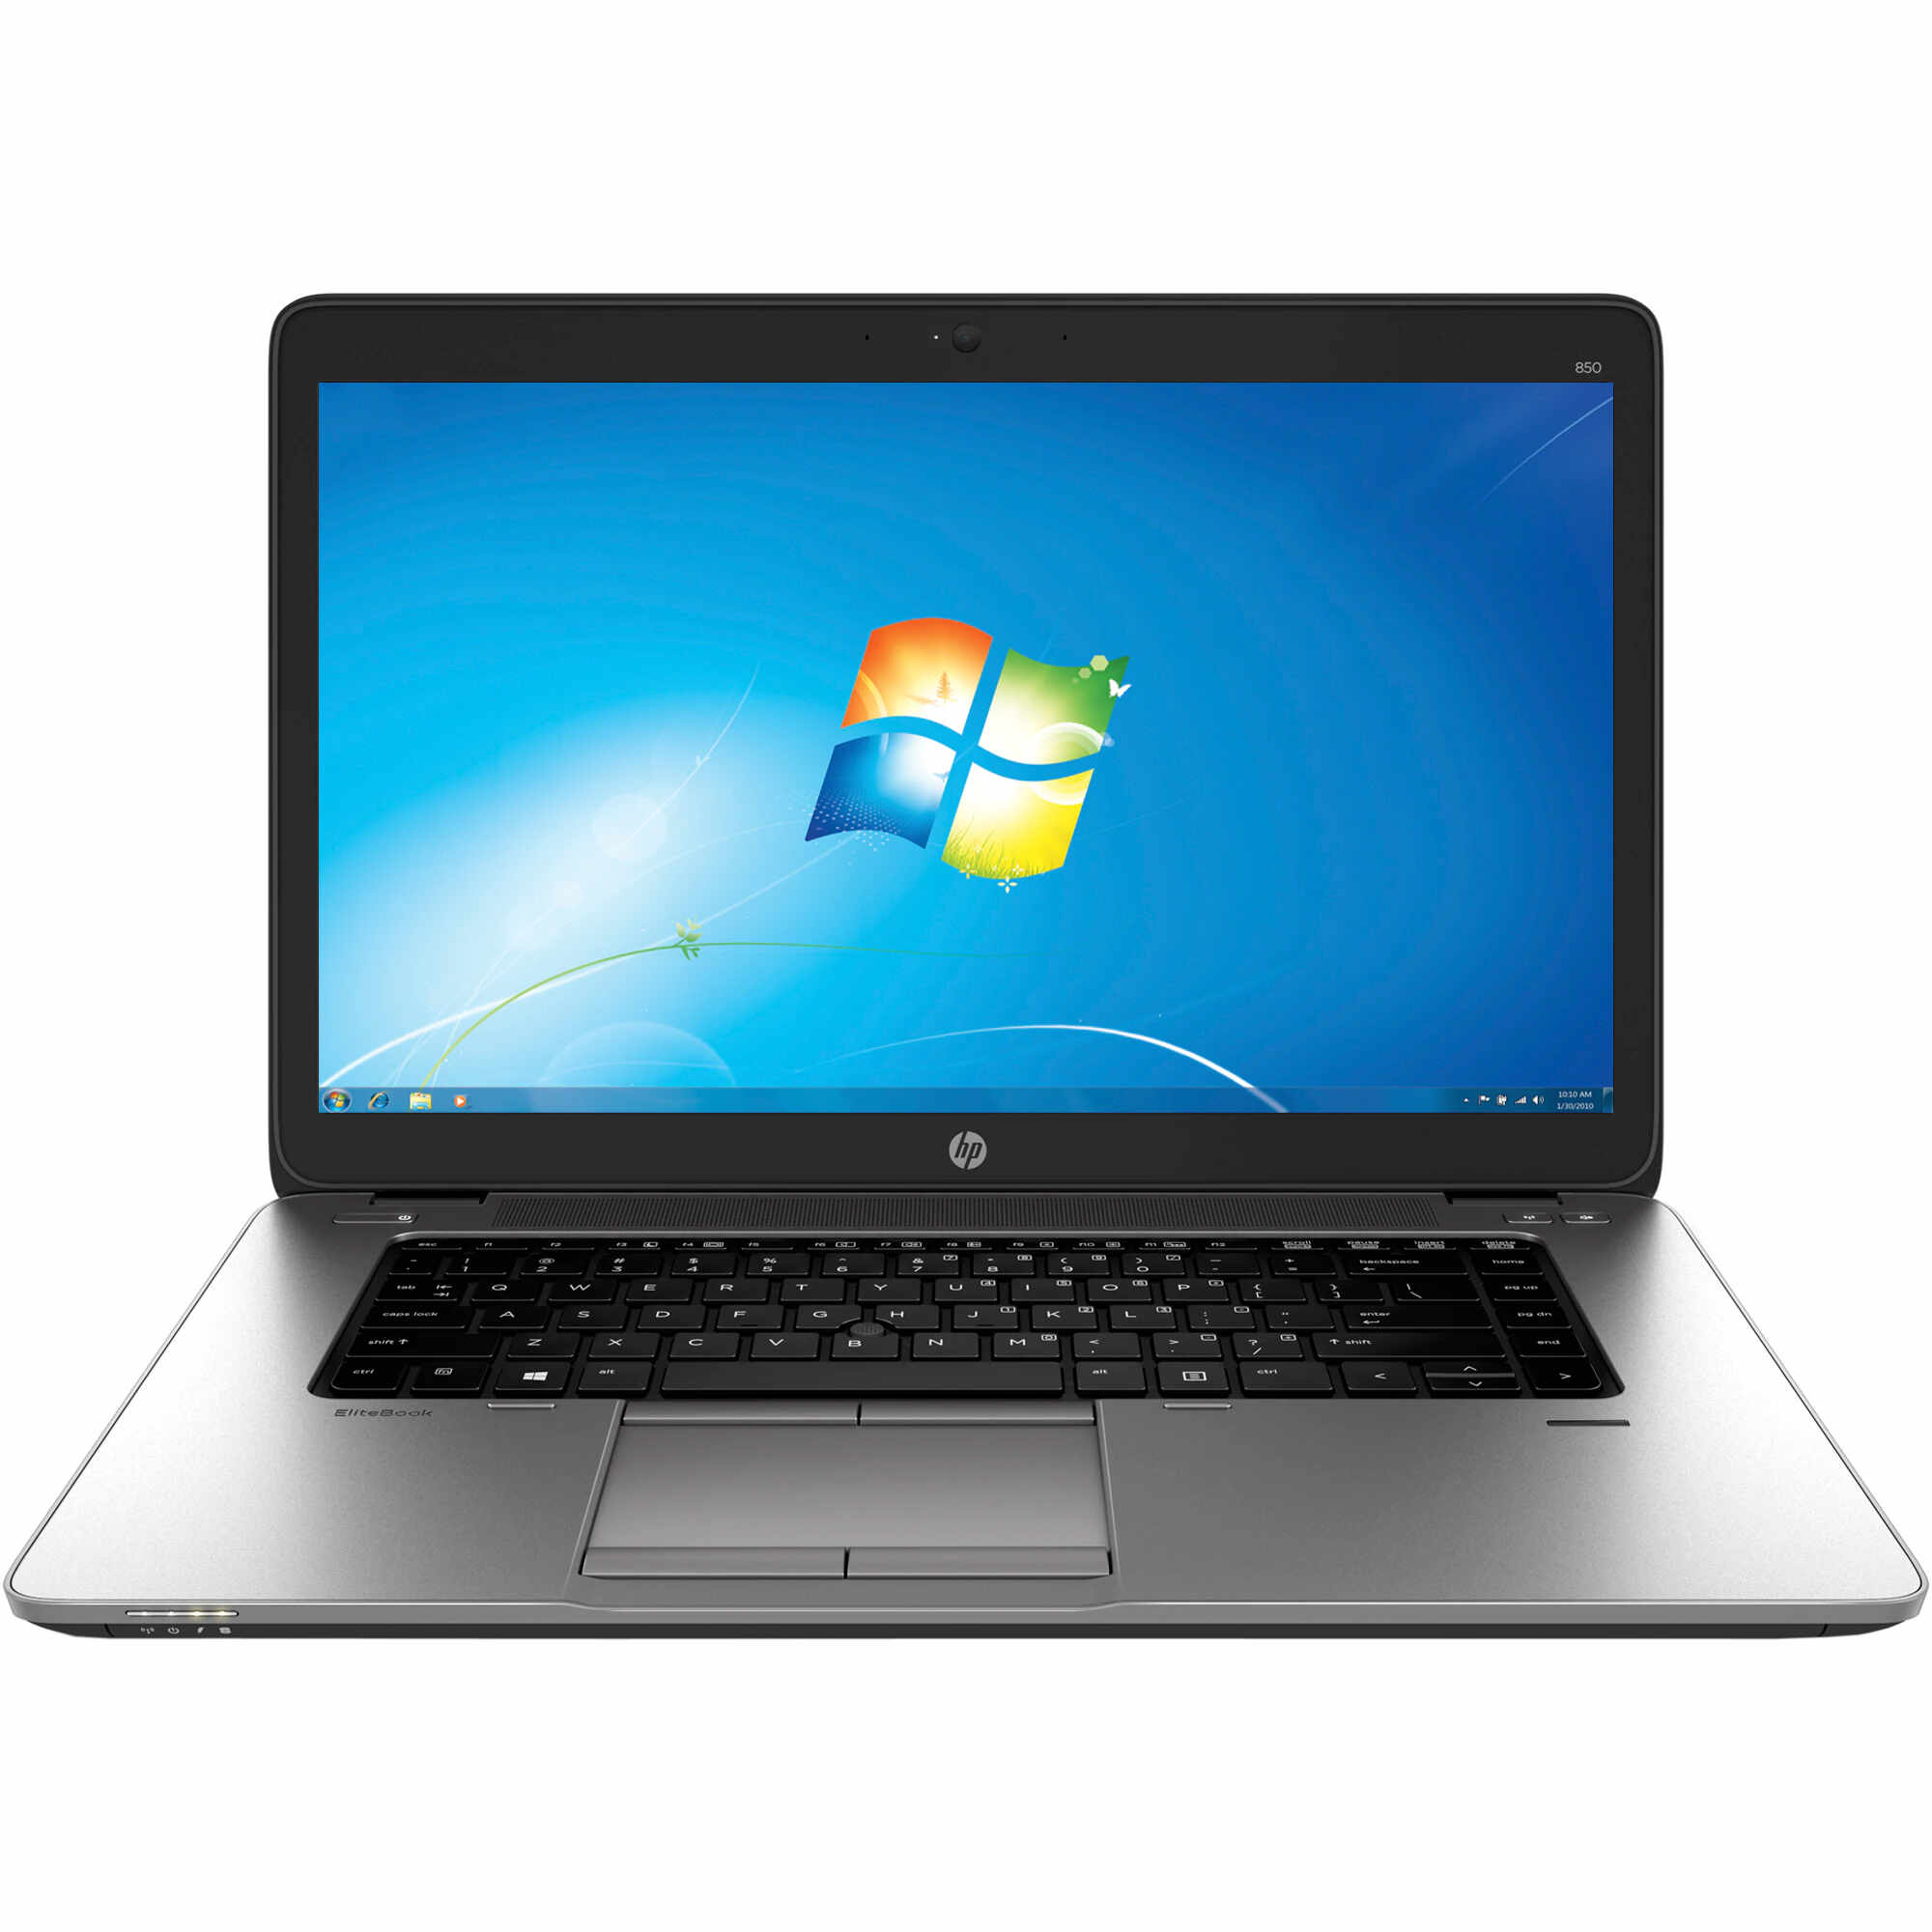 Laptop HP EliteBook 850 G1, Intel Core i5-4300U 1.90GHz, 4GB DDR3, 120GB SSD, 15.6 Inch, Webcam, Grad B (0288)